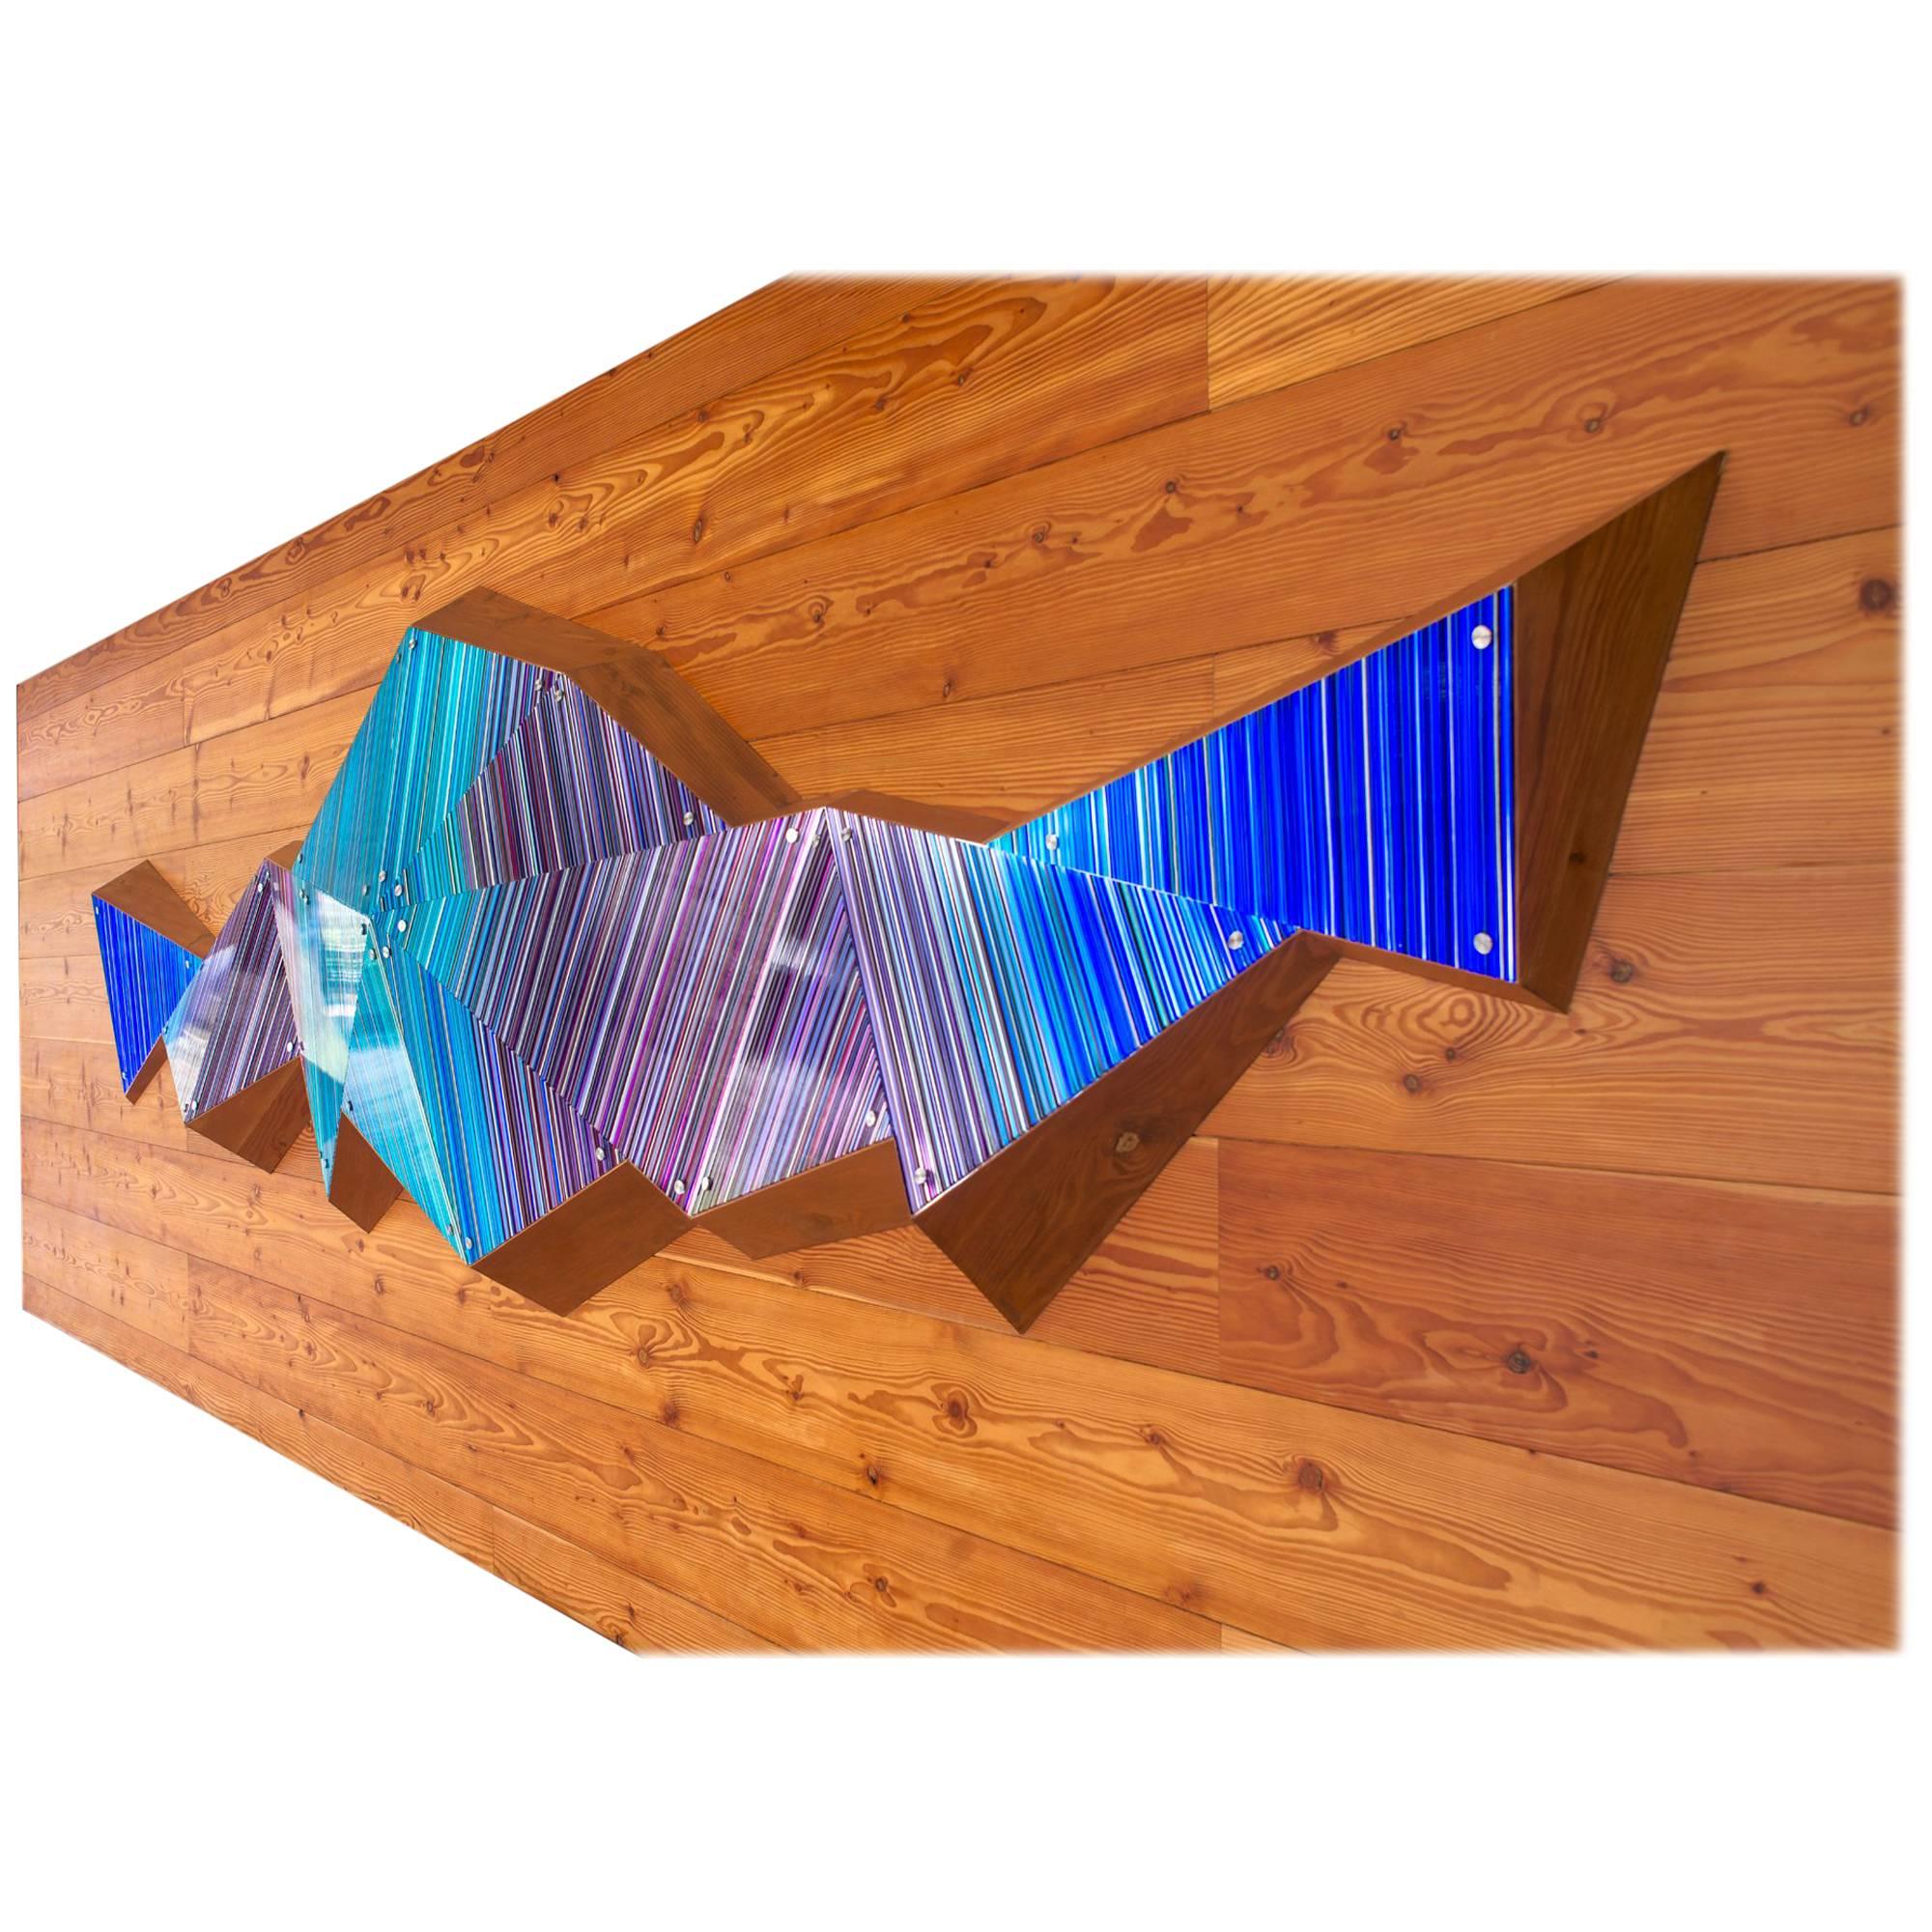 Purple Blue Scheme 3D Faceted Glass Barcode Sculpture Wall Light Installation